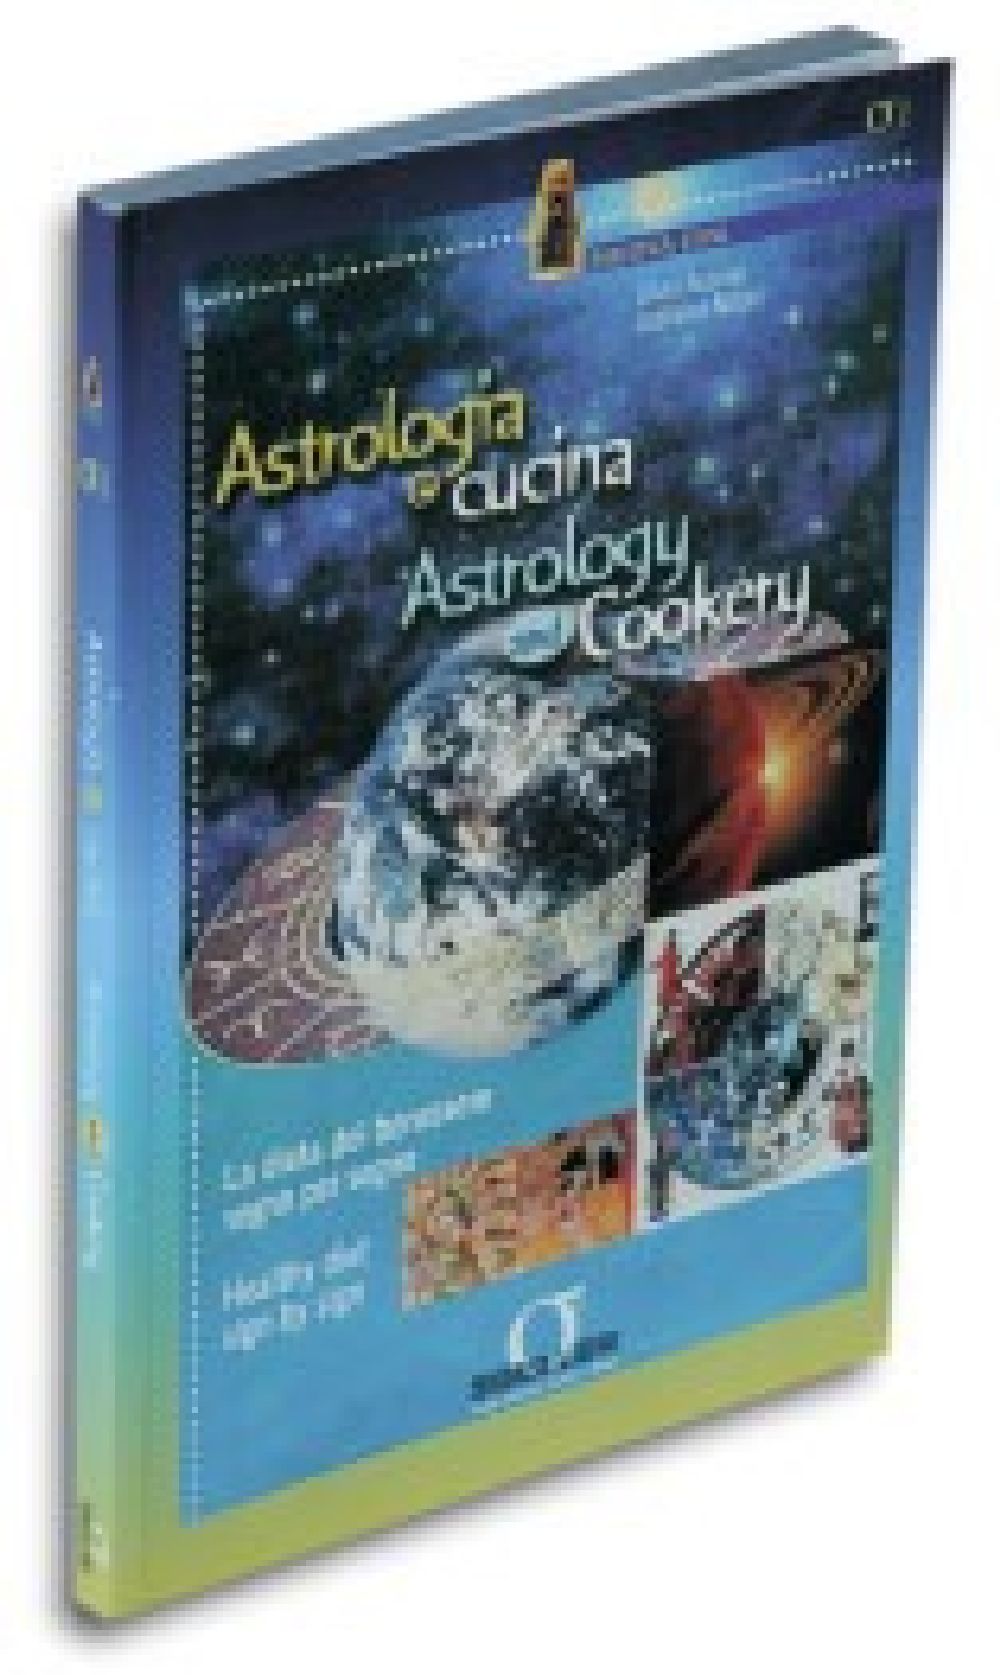 [Ebook] Astrologia e cucina